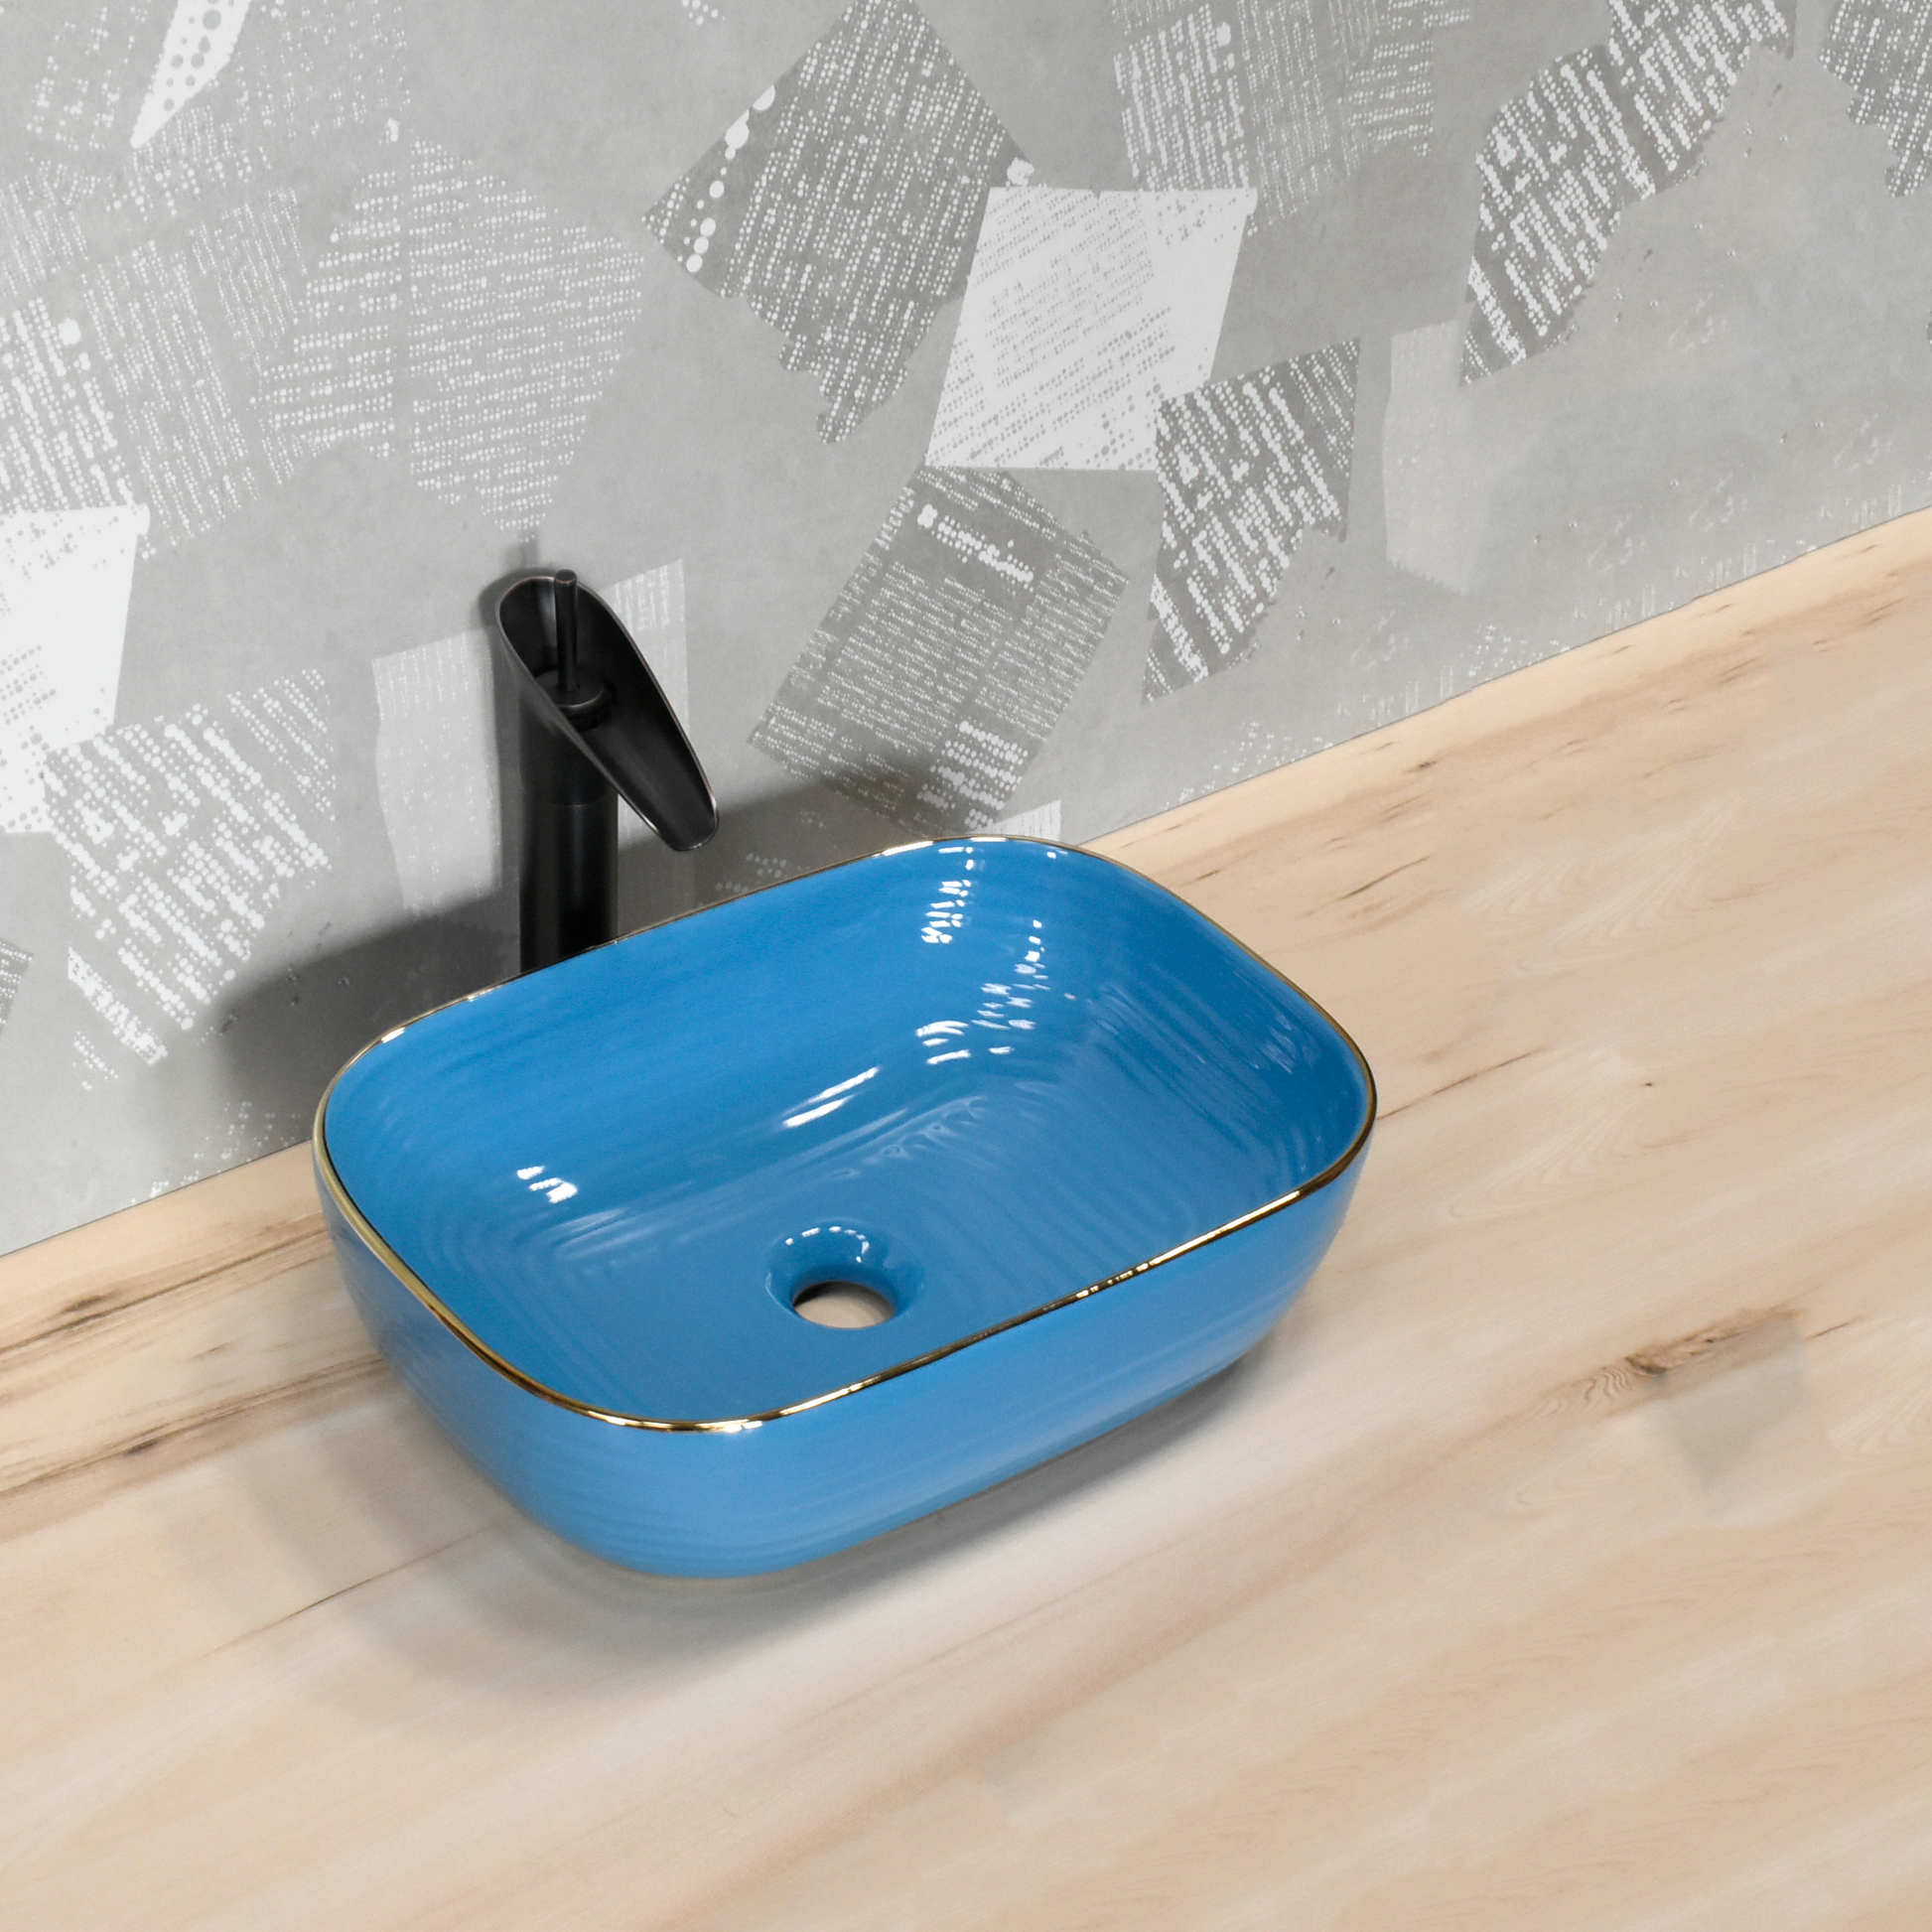 InArt Wash Basin Table Top Design Blue Color 45.5 x 32 CM Counter Basin - InArt-Studio